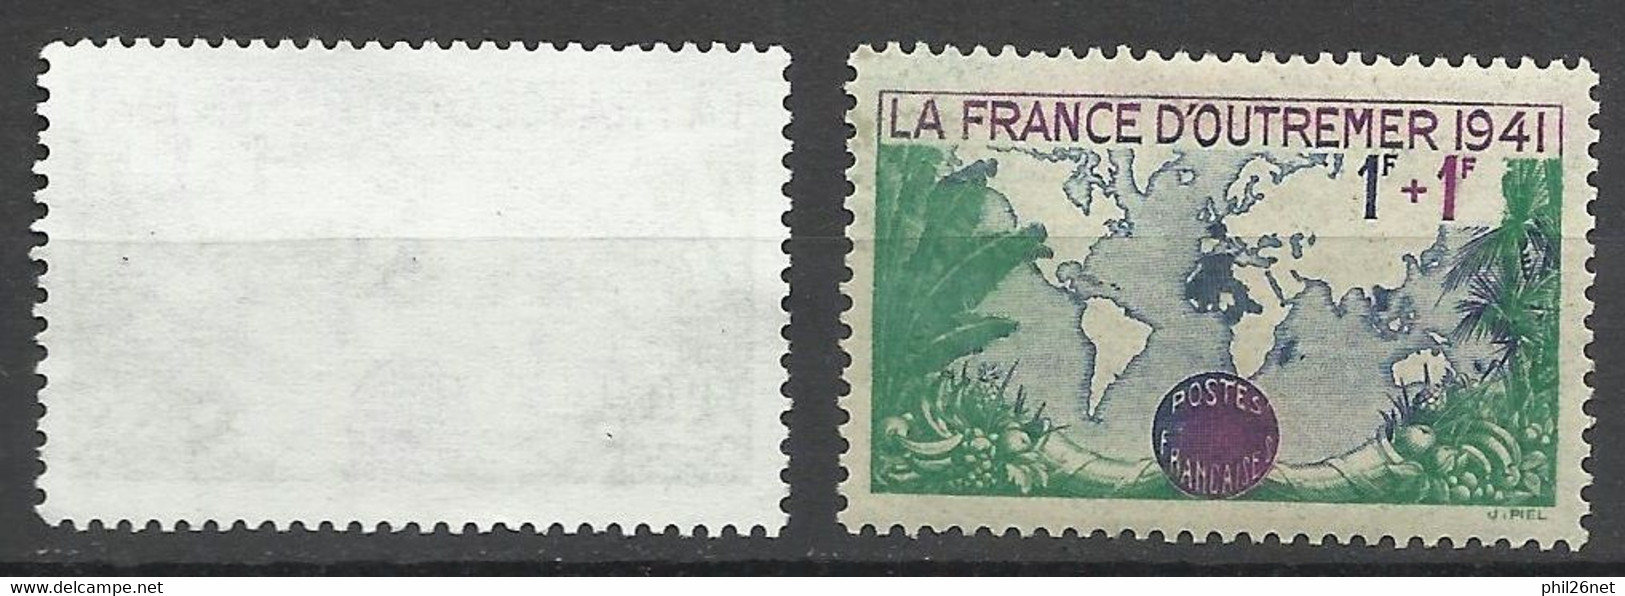 France Petites Variétés N°503  Couleurs Dégradées   Neuf ( * )  Le 503 Type Pour Comparer B/ TB  Voir Scans Soldes ! ! ! - Unused Stamps